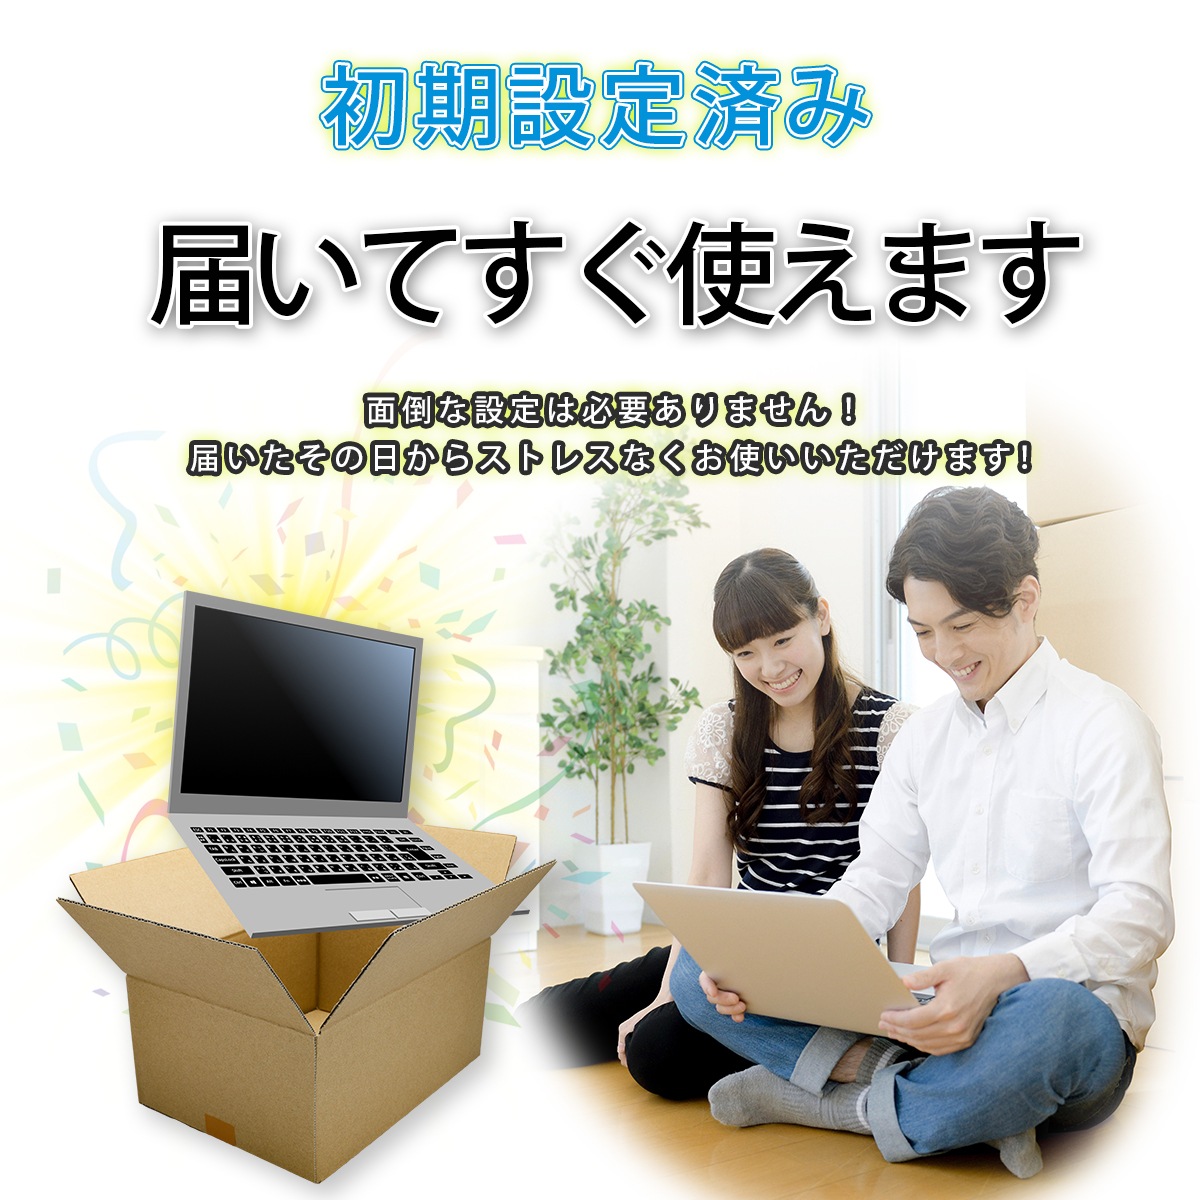 東芝 : Core i5 dynabook : タブレット・パソコン 豊富な人気